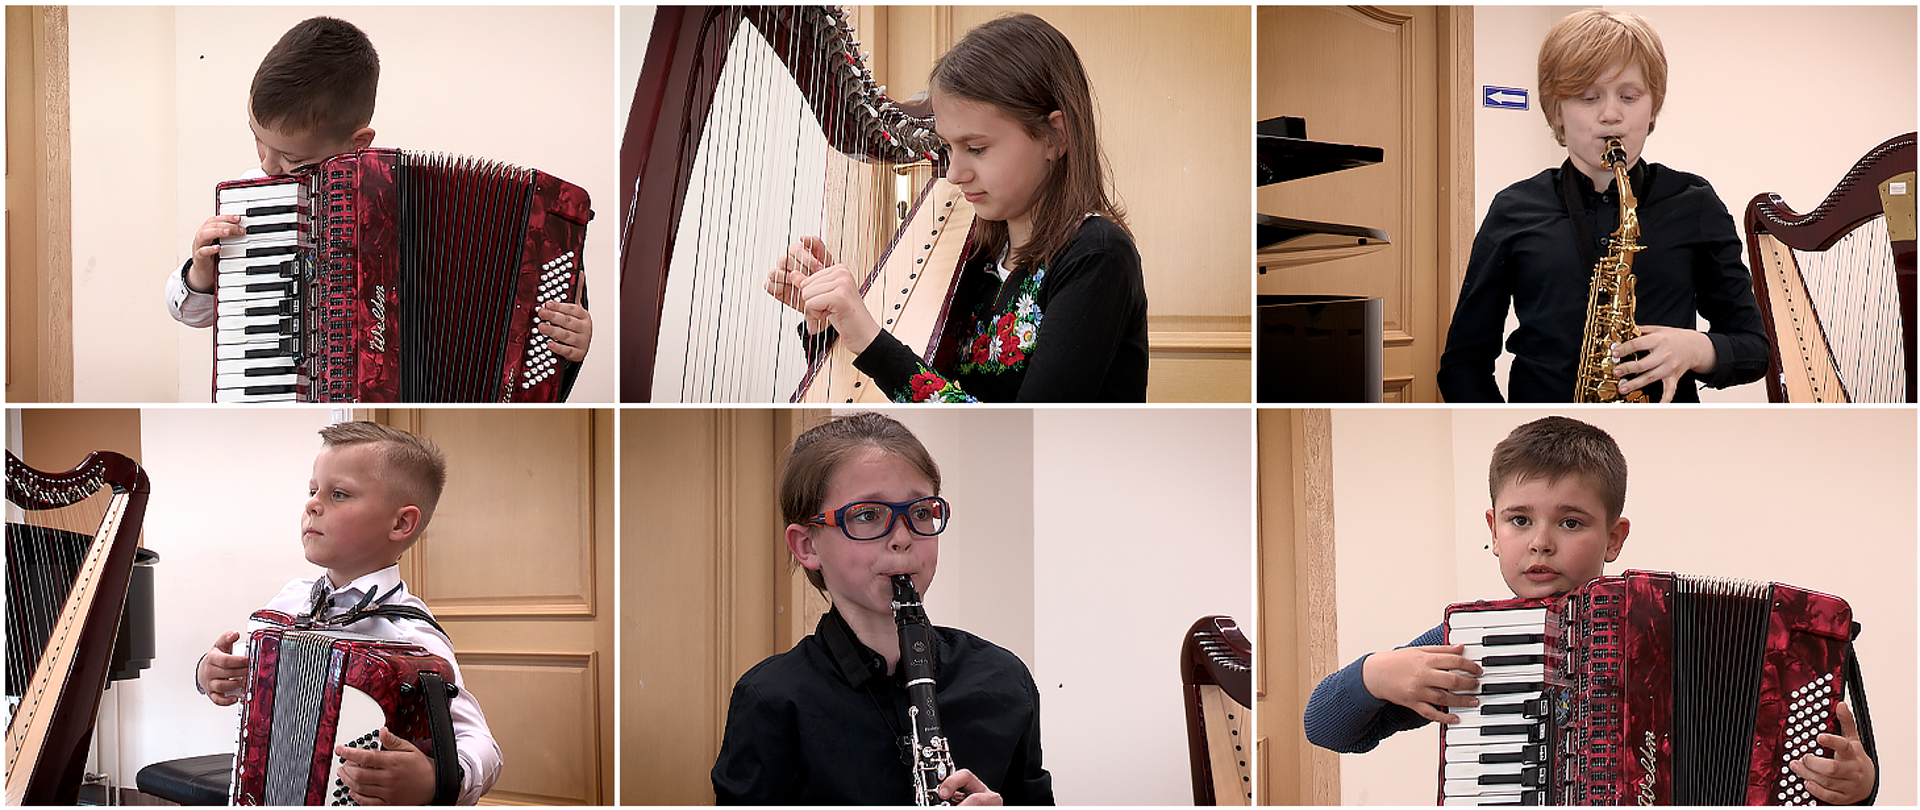 Kolaż 6 zdjęć - dzieci grają na instrumentach muzycznych. W górnej części trzy zdjęcia - od lewej chłopiec gra na akordeonie, dziewczynka na harfie i chłopiec na saksofonie. W dolnej części także trzy zdjęcia - trzej chłopcy grają kolejno od lewej na akordeonie, klarnecie i akordeonie,